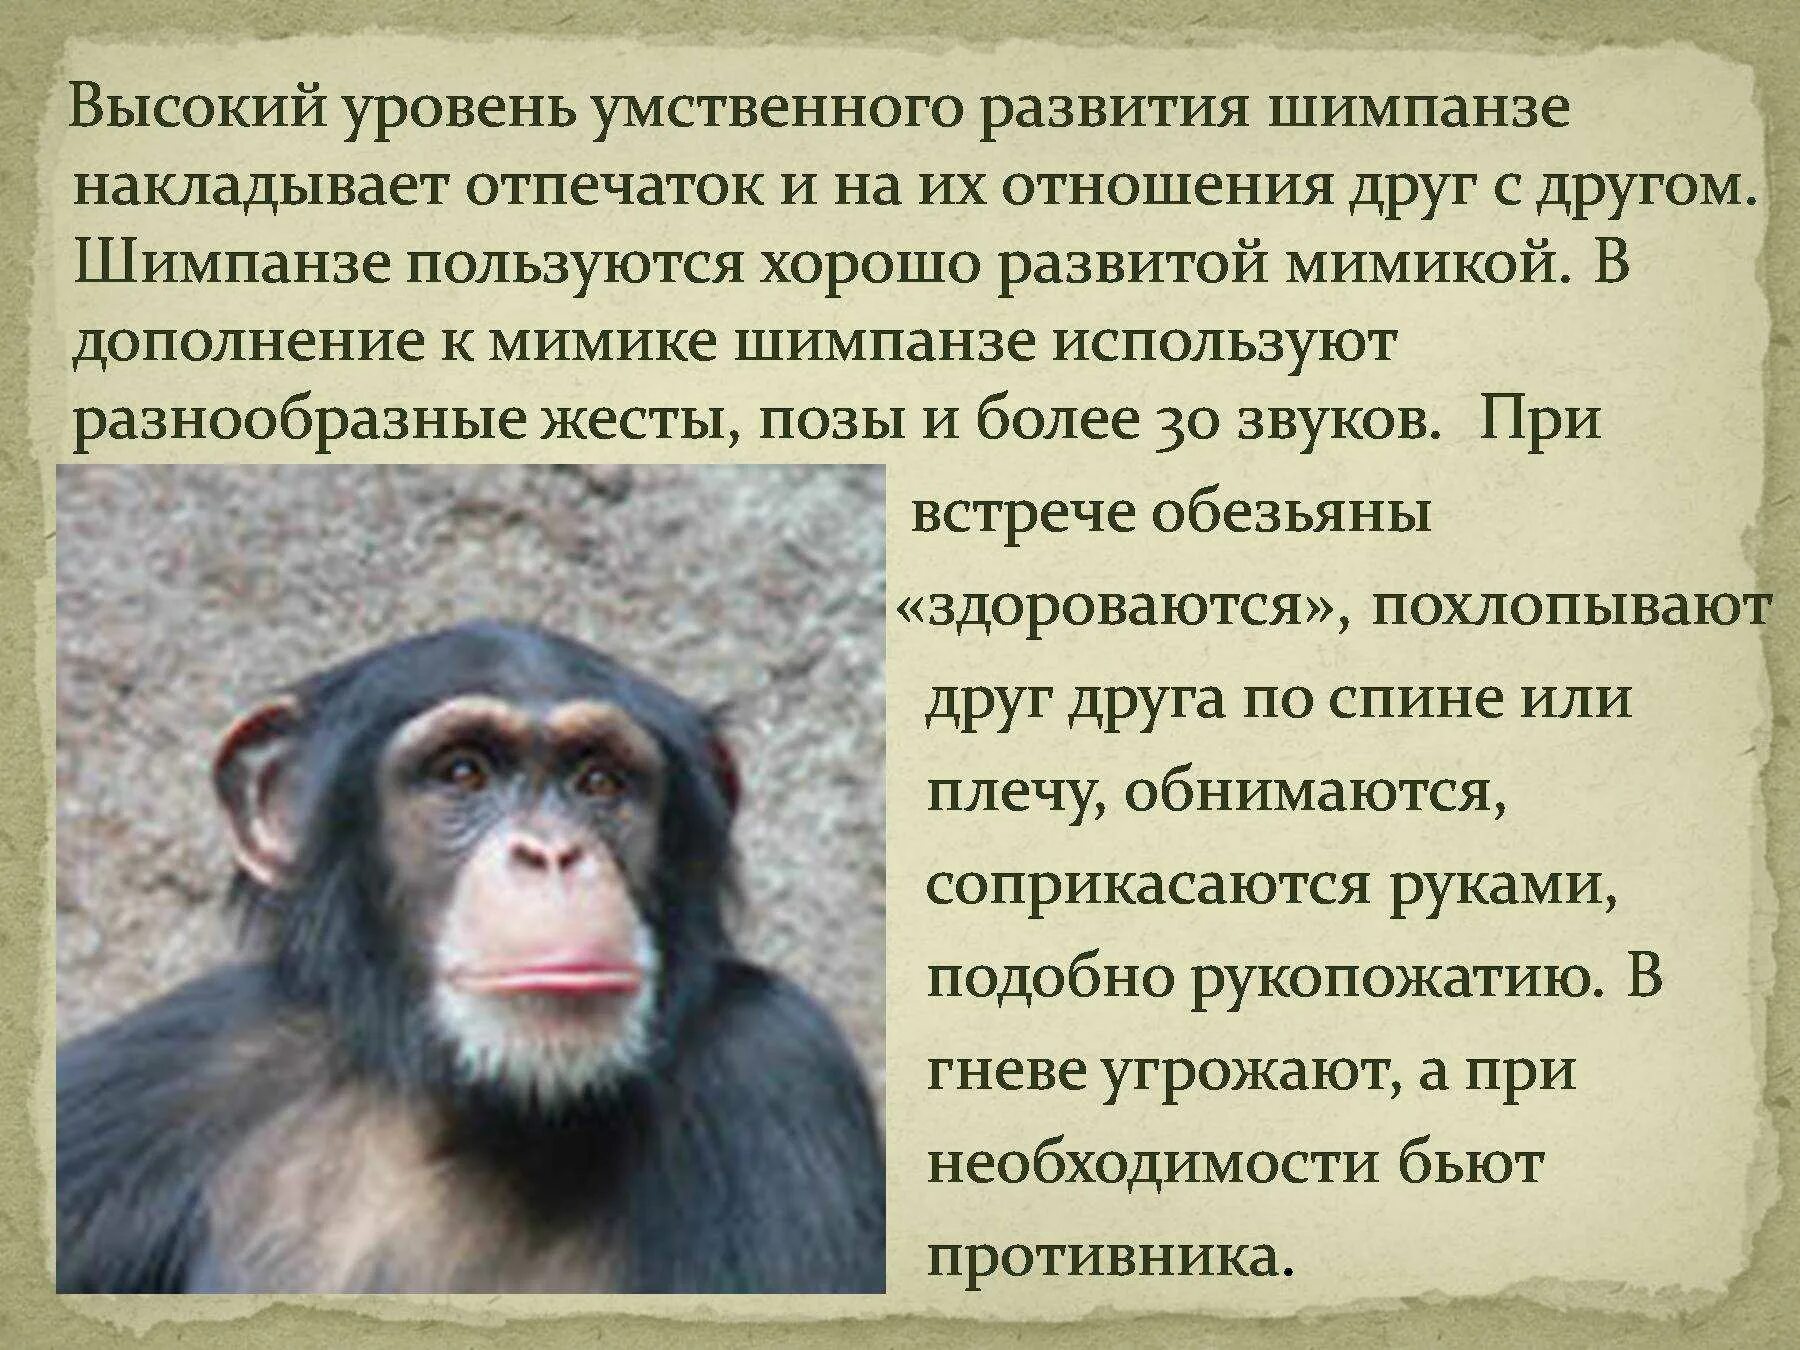 Интересные факты про обезьян. Интересные факты о шимпанзе. Описание обезьяны. Статью об обезьянах. Какие слова помогают представить обезьянку